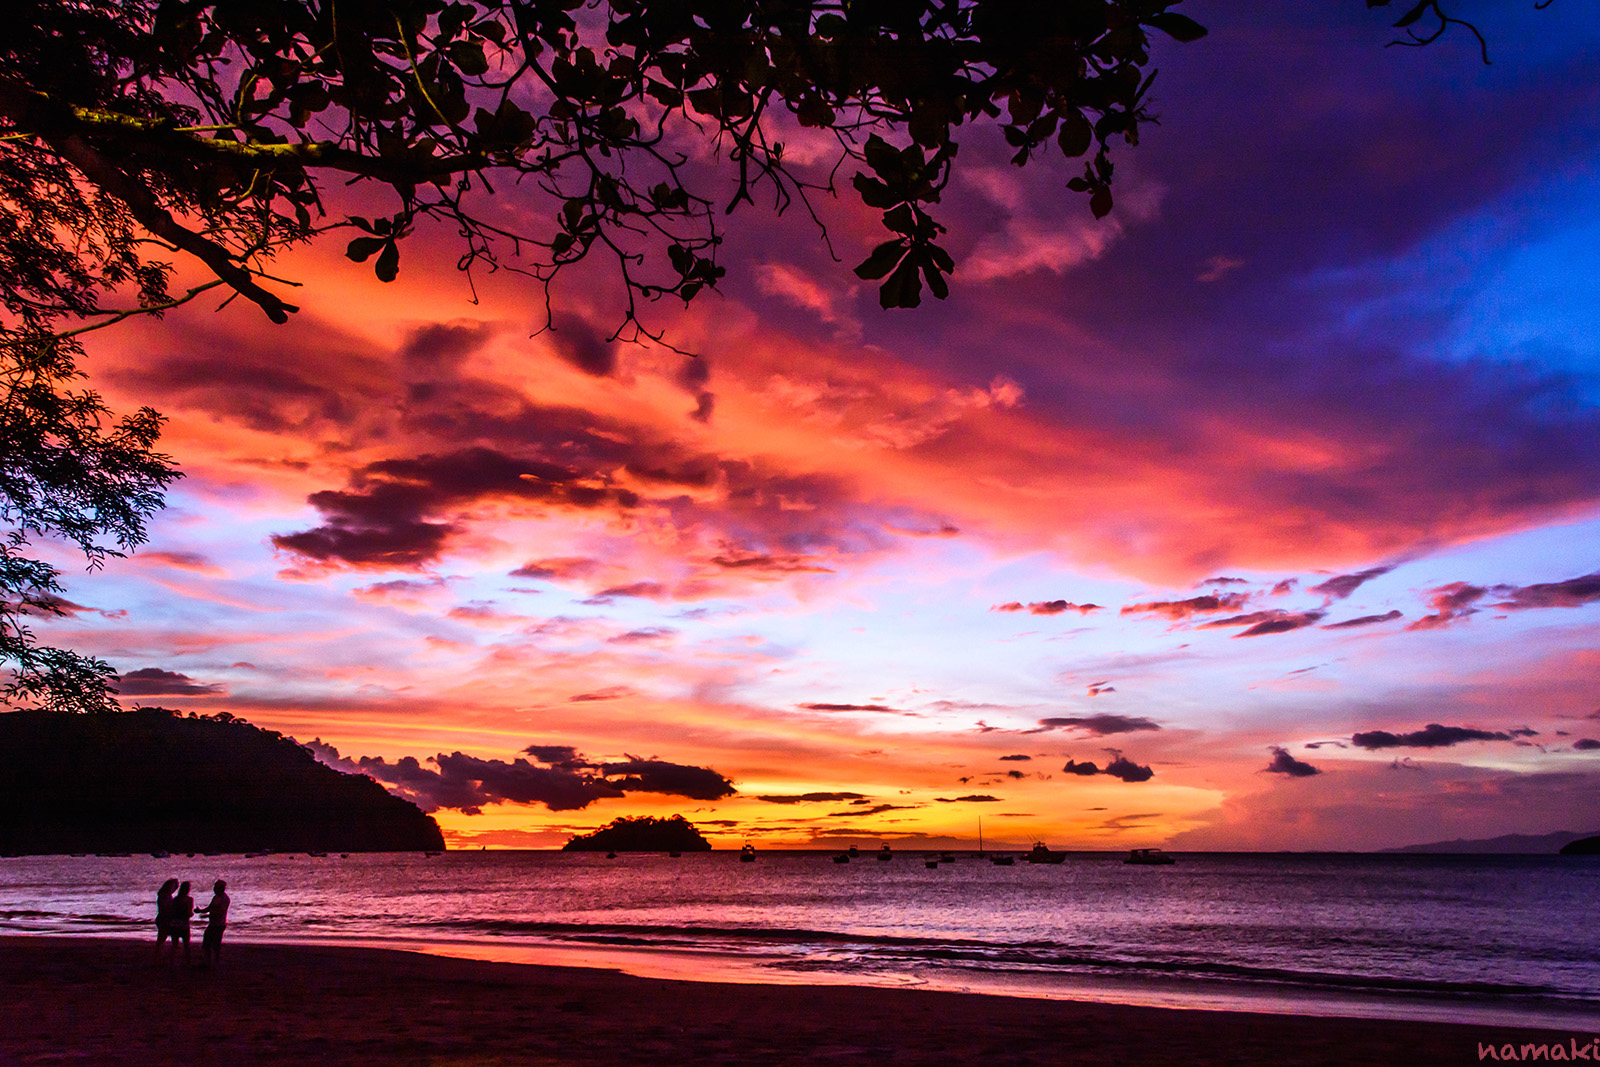 A beach sunset in Costa Rica.